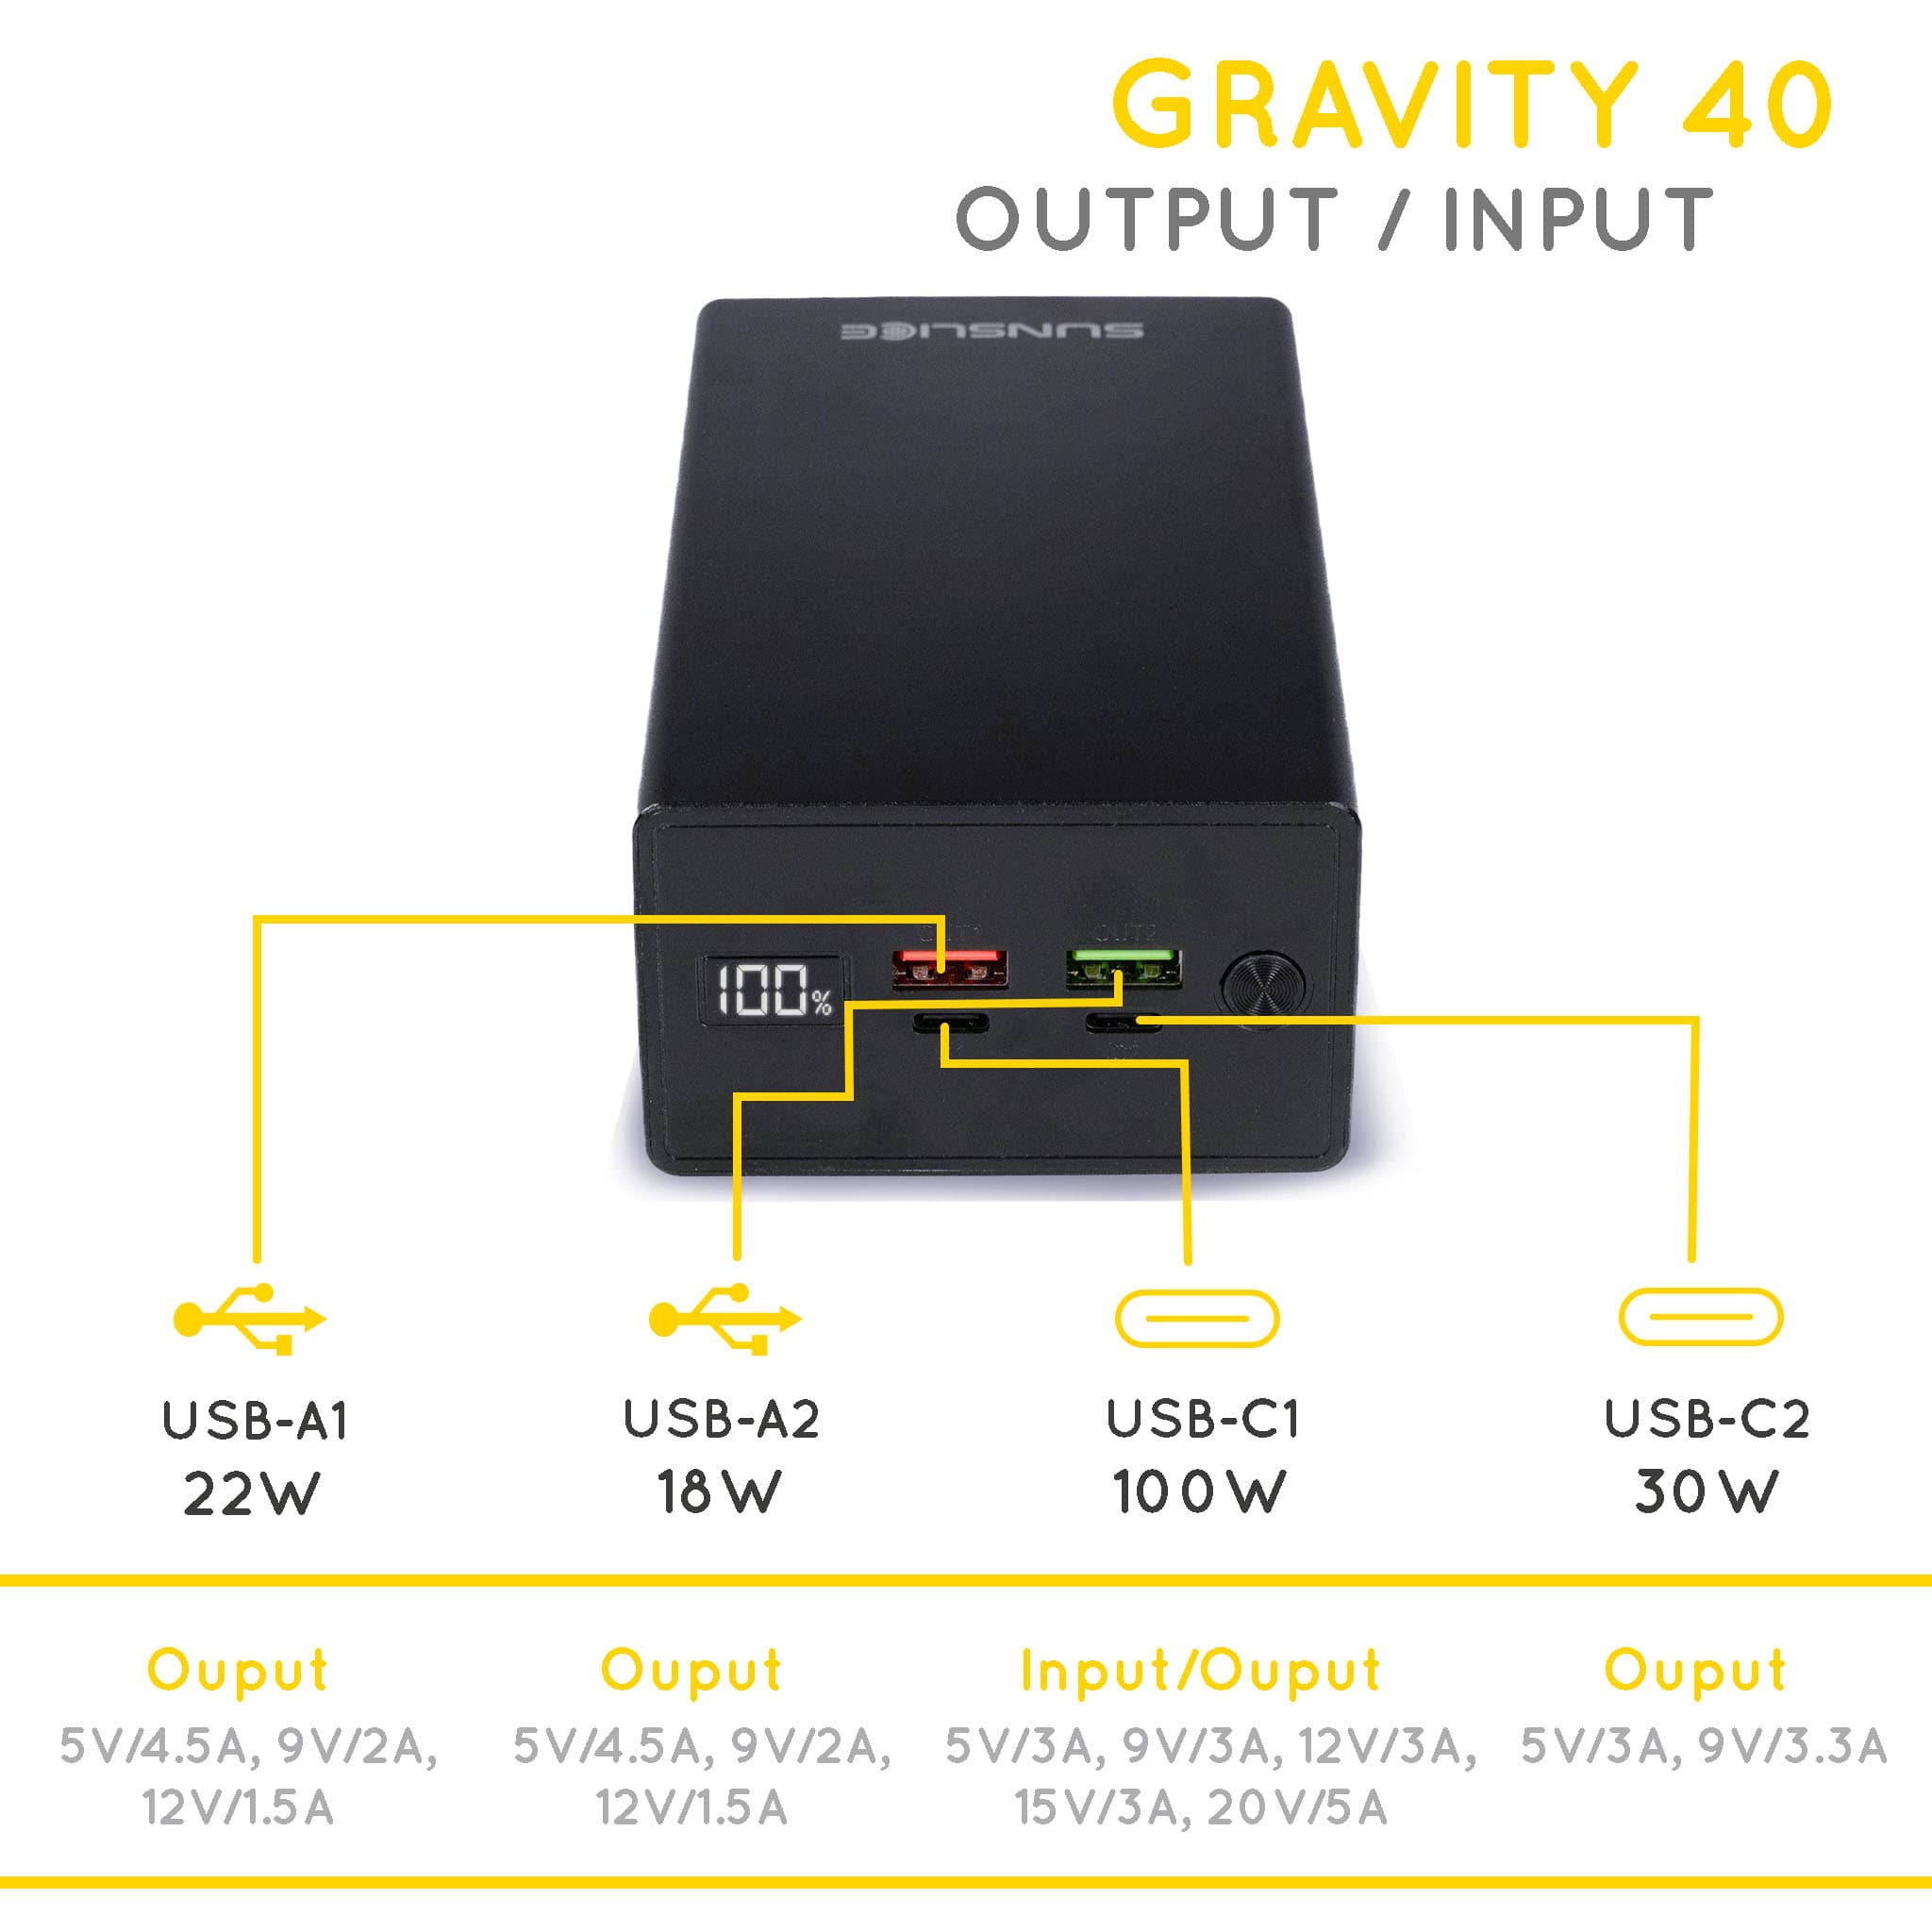 Gravity 40 reservebatterij voor laptop uitgang/ingang : USB-A1 22W, USB-A2 18W, USB-C1 100W, USB-C2 30W